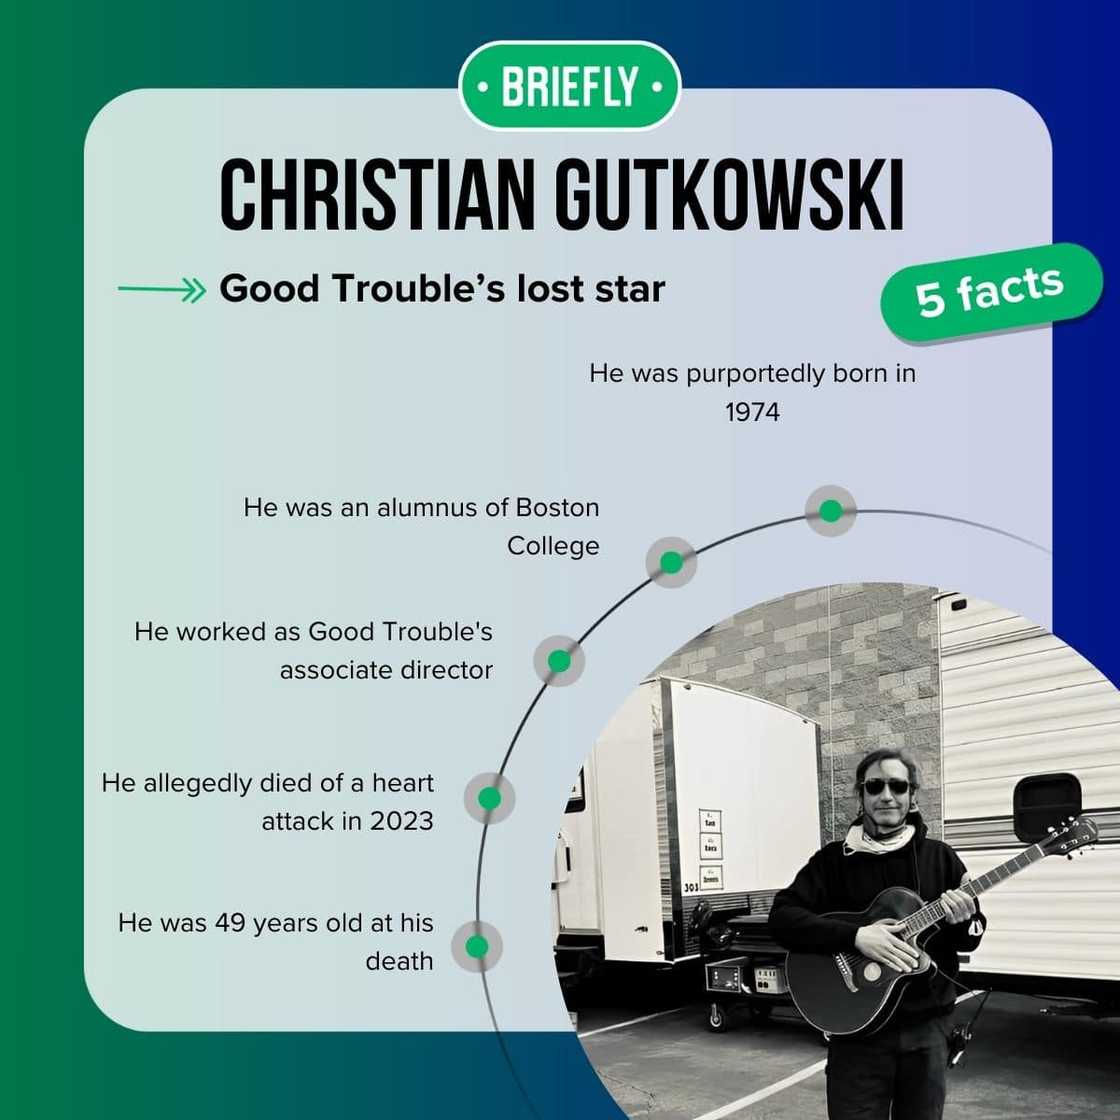 Christian Gutkowski's facts